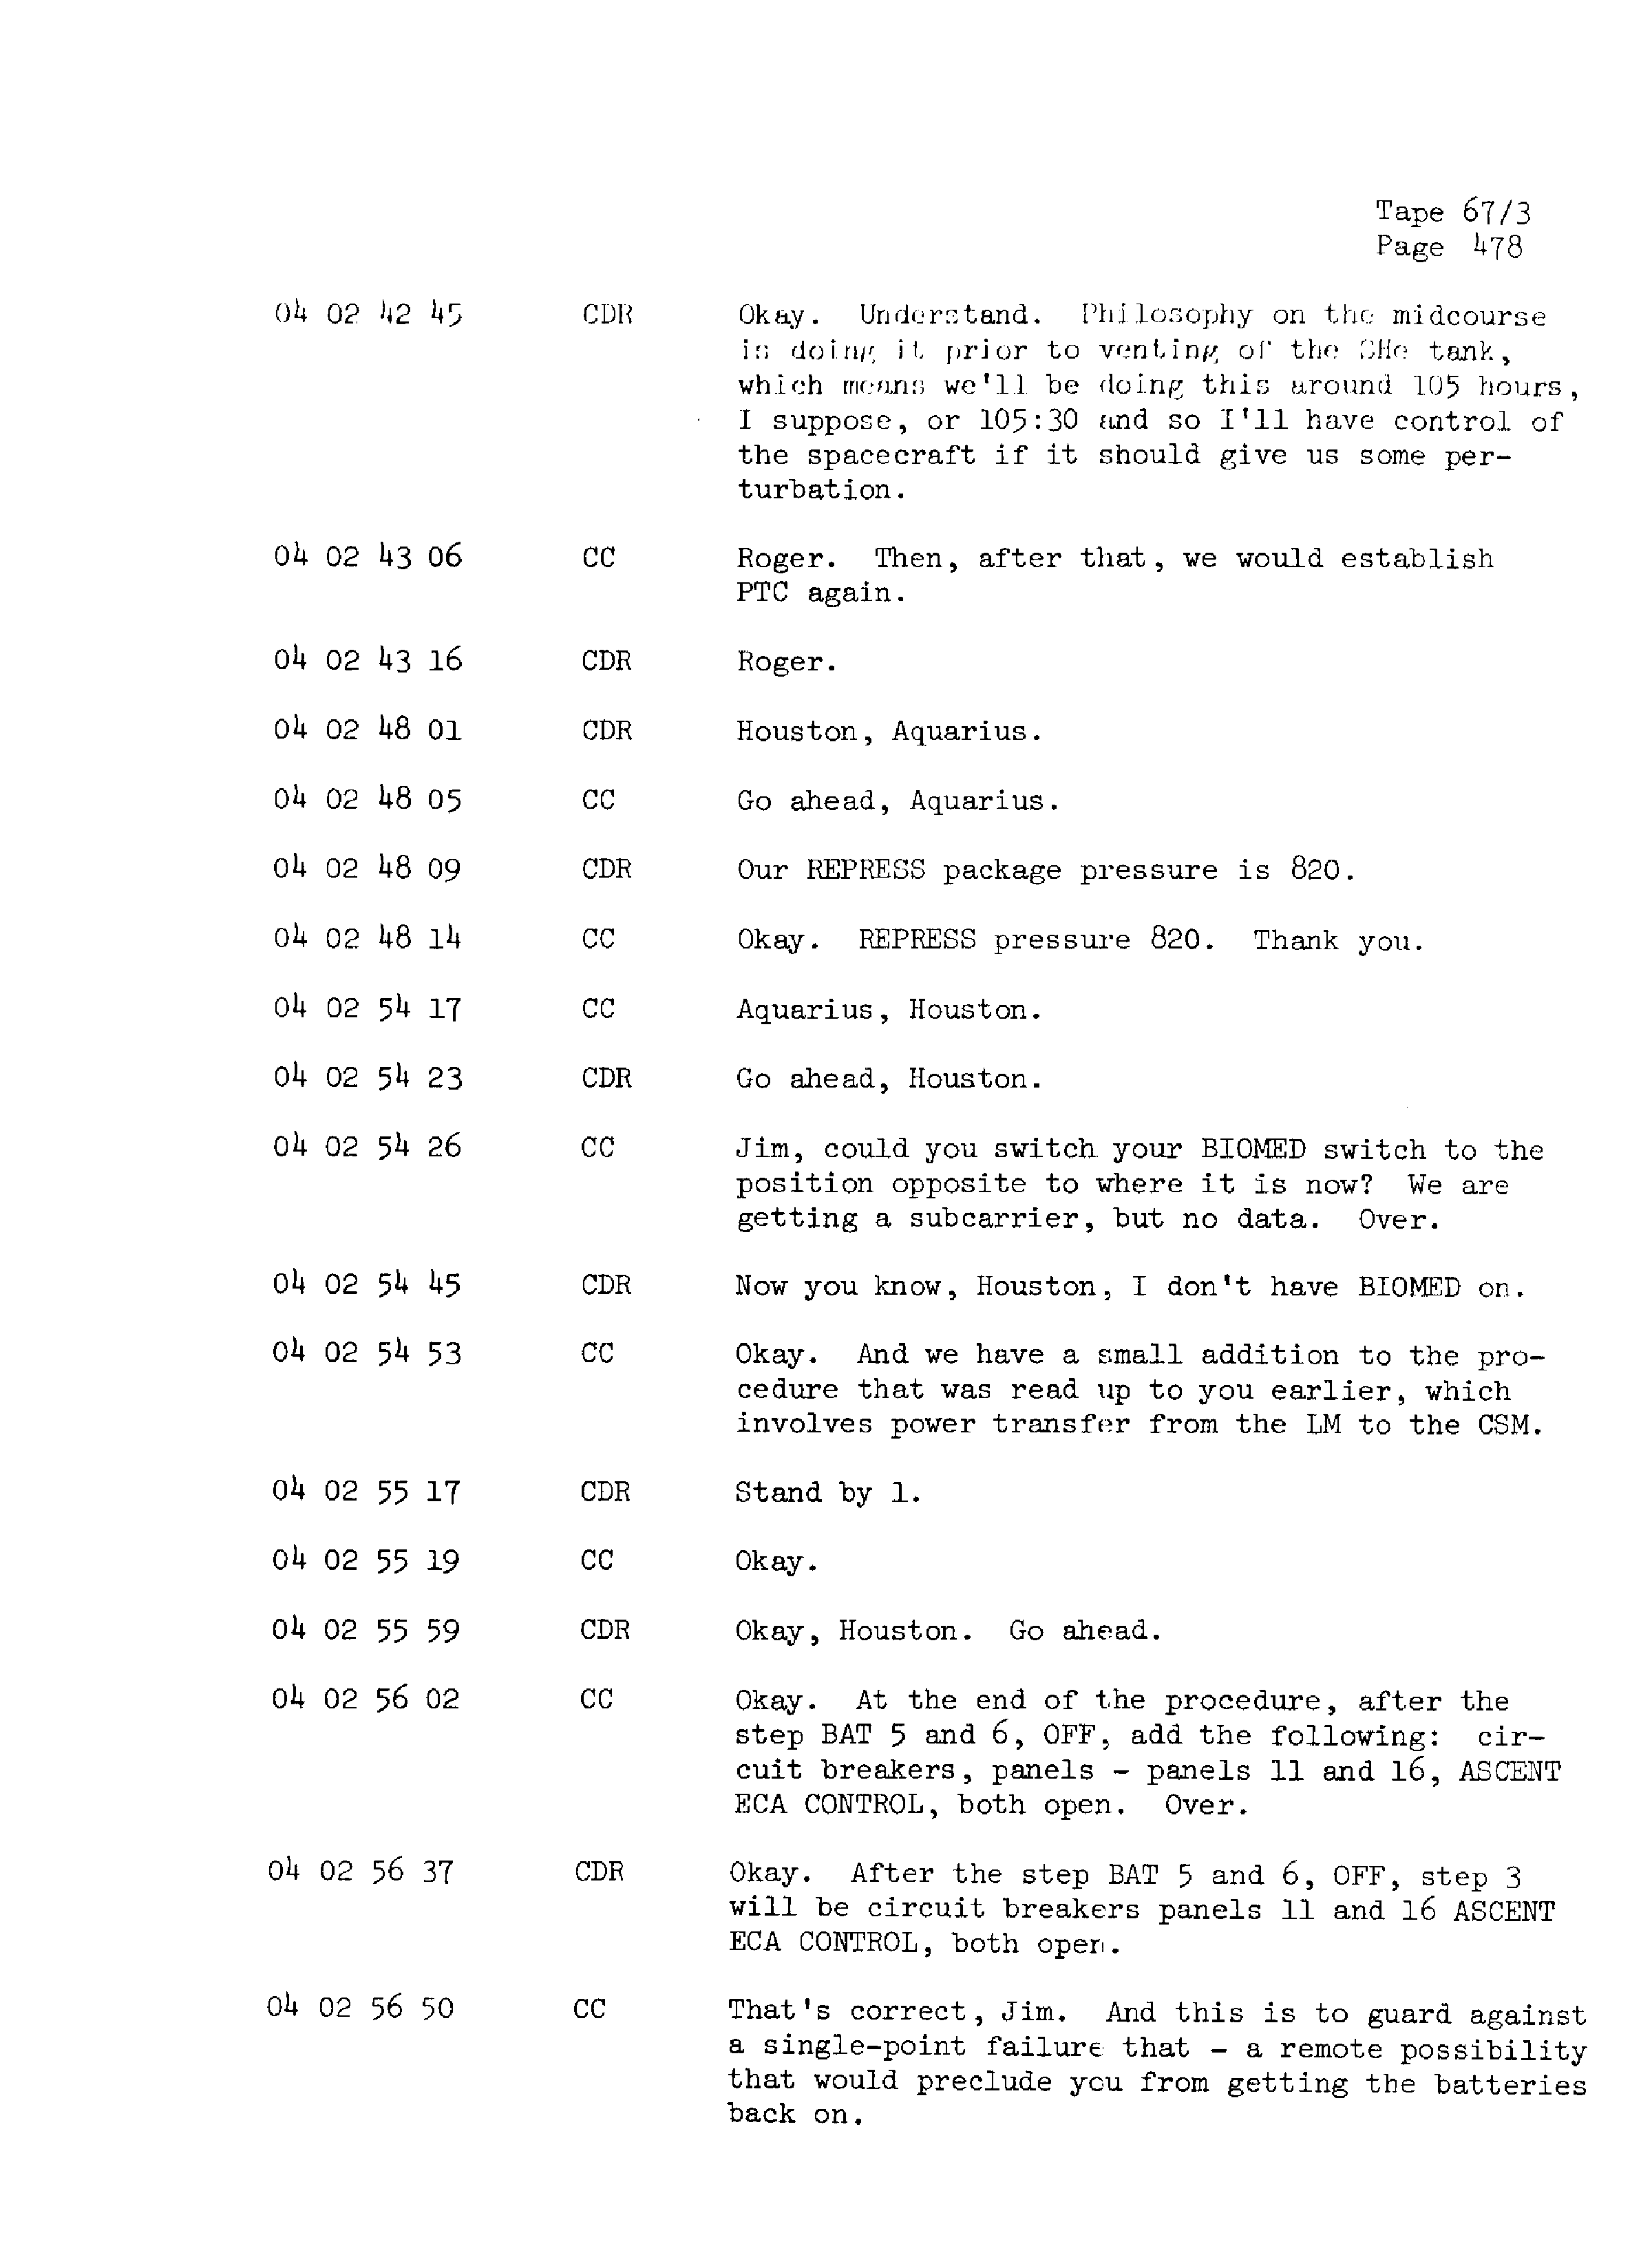 Page 485 of Apollo 13’s original transcript